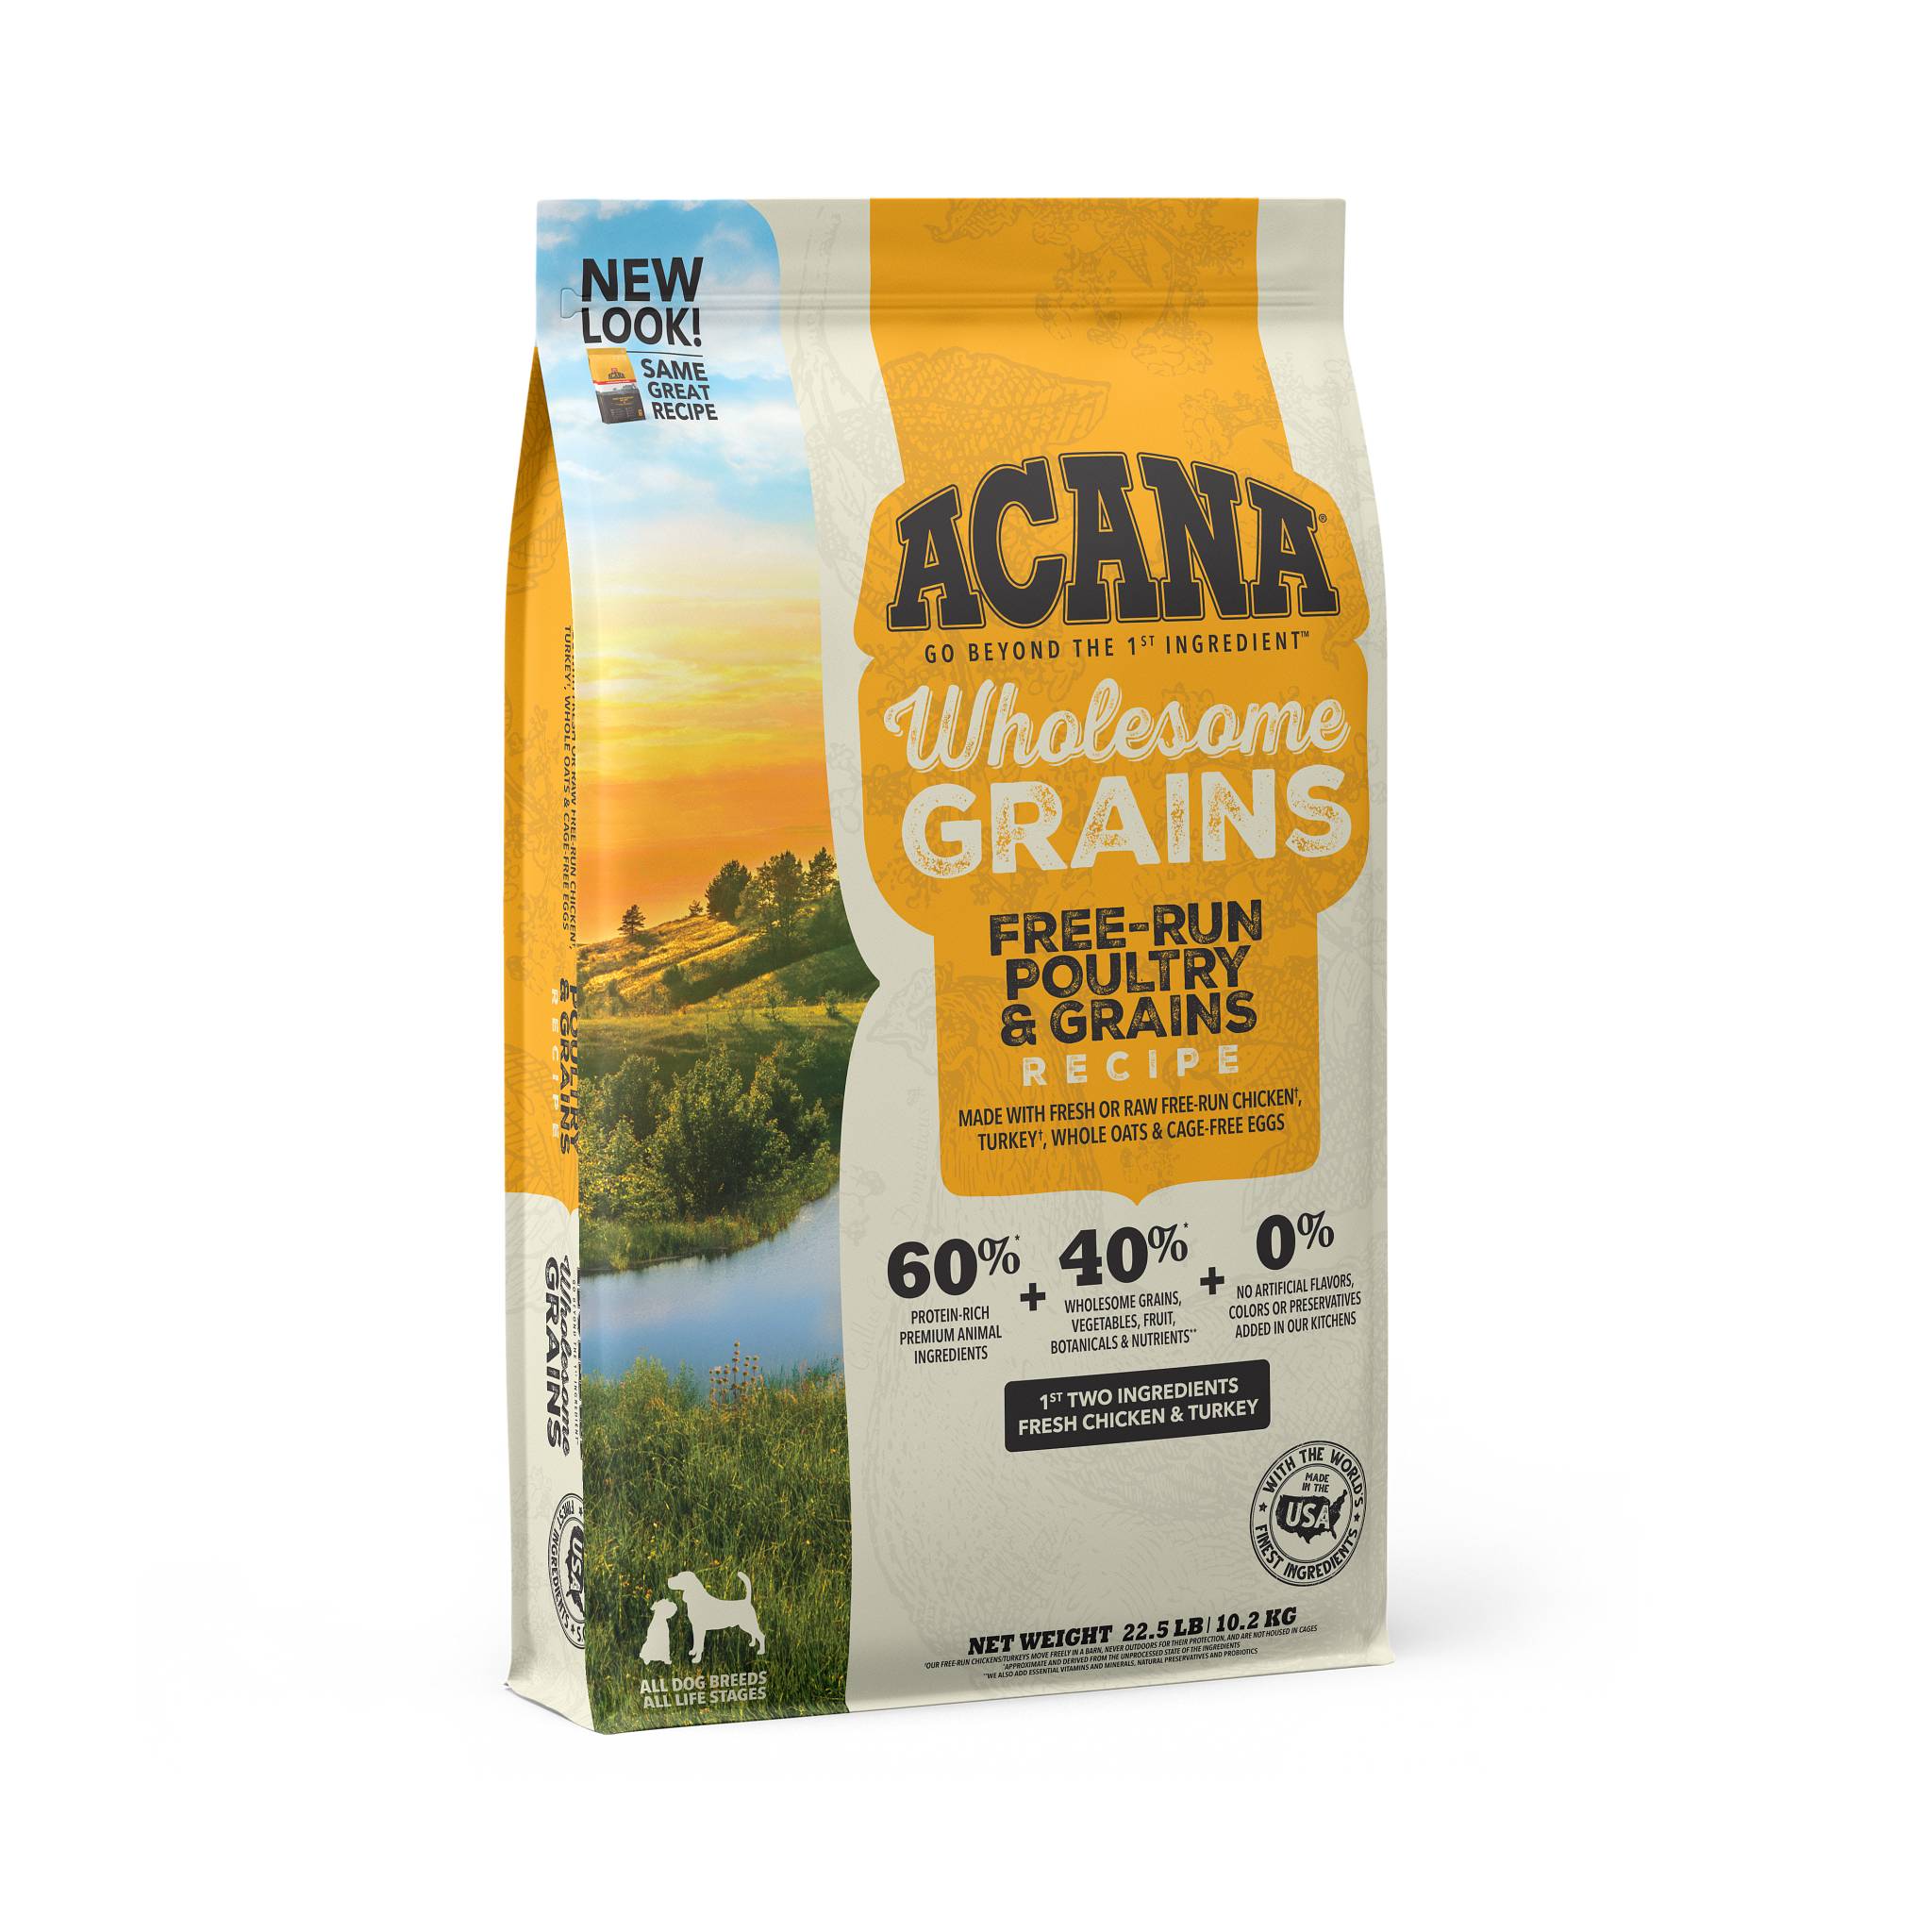 New Acana Wholesome Grain Free-Run Poultry & Grain Recipe